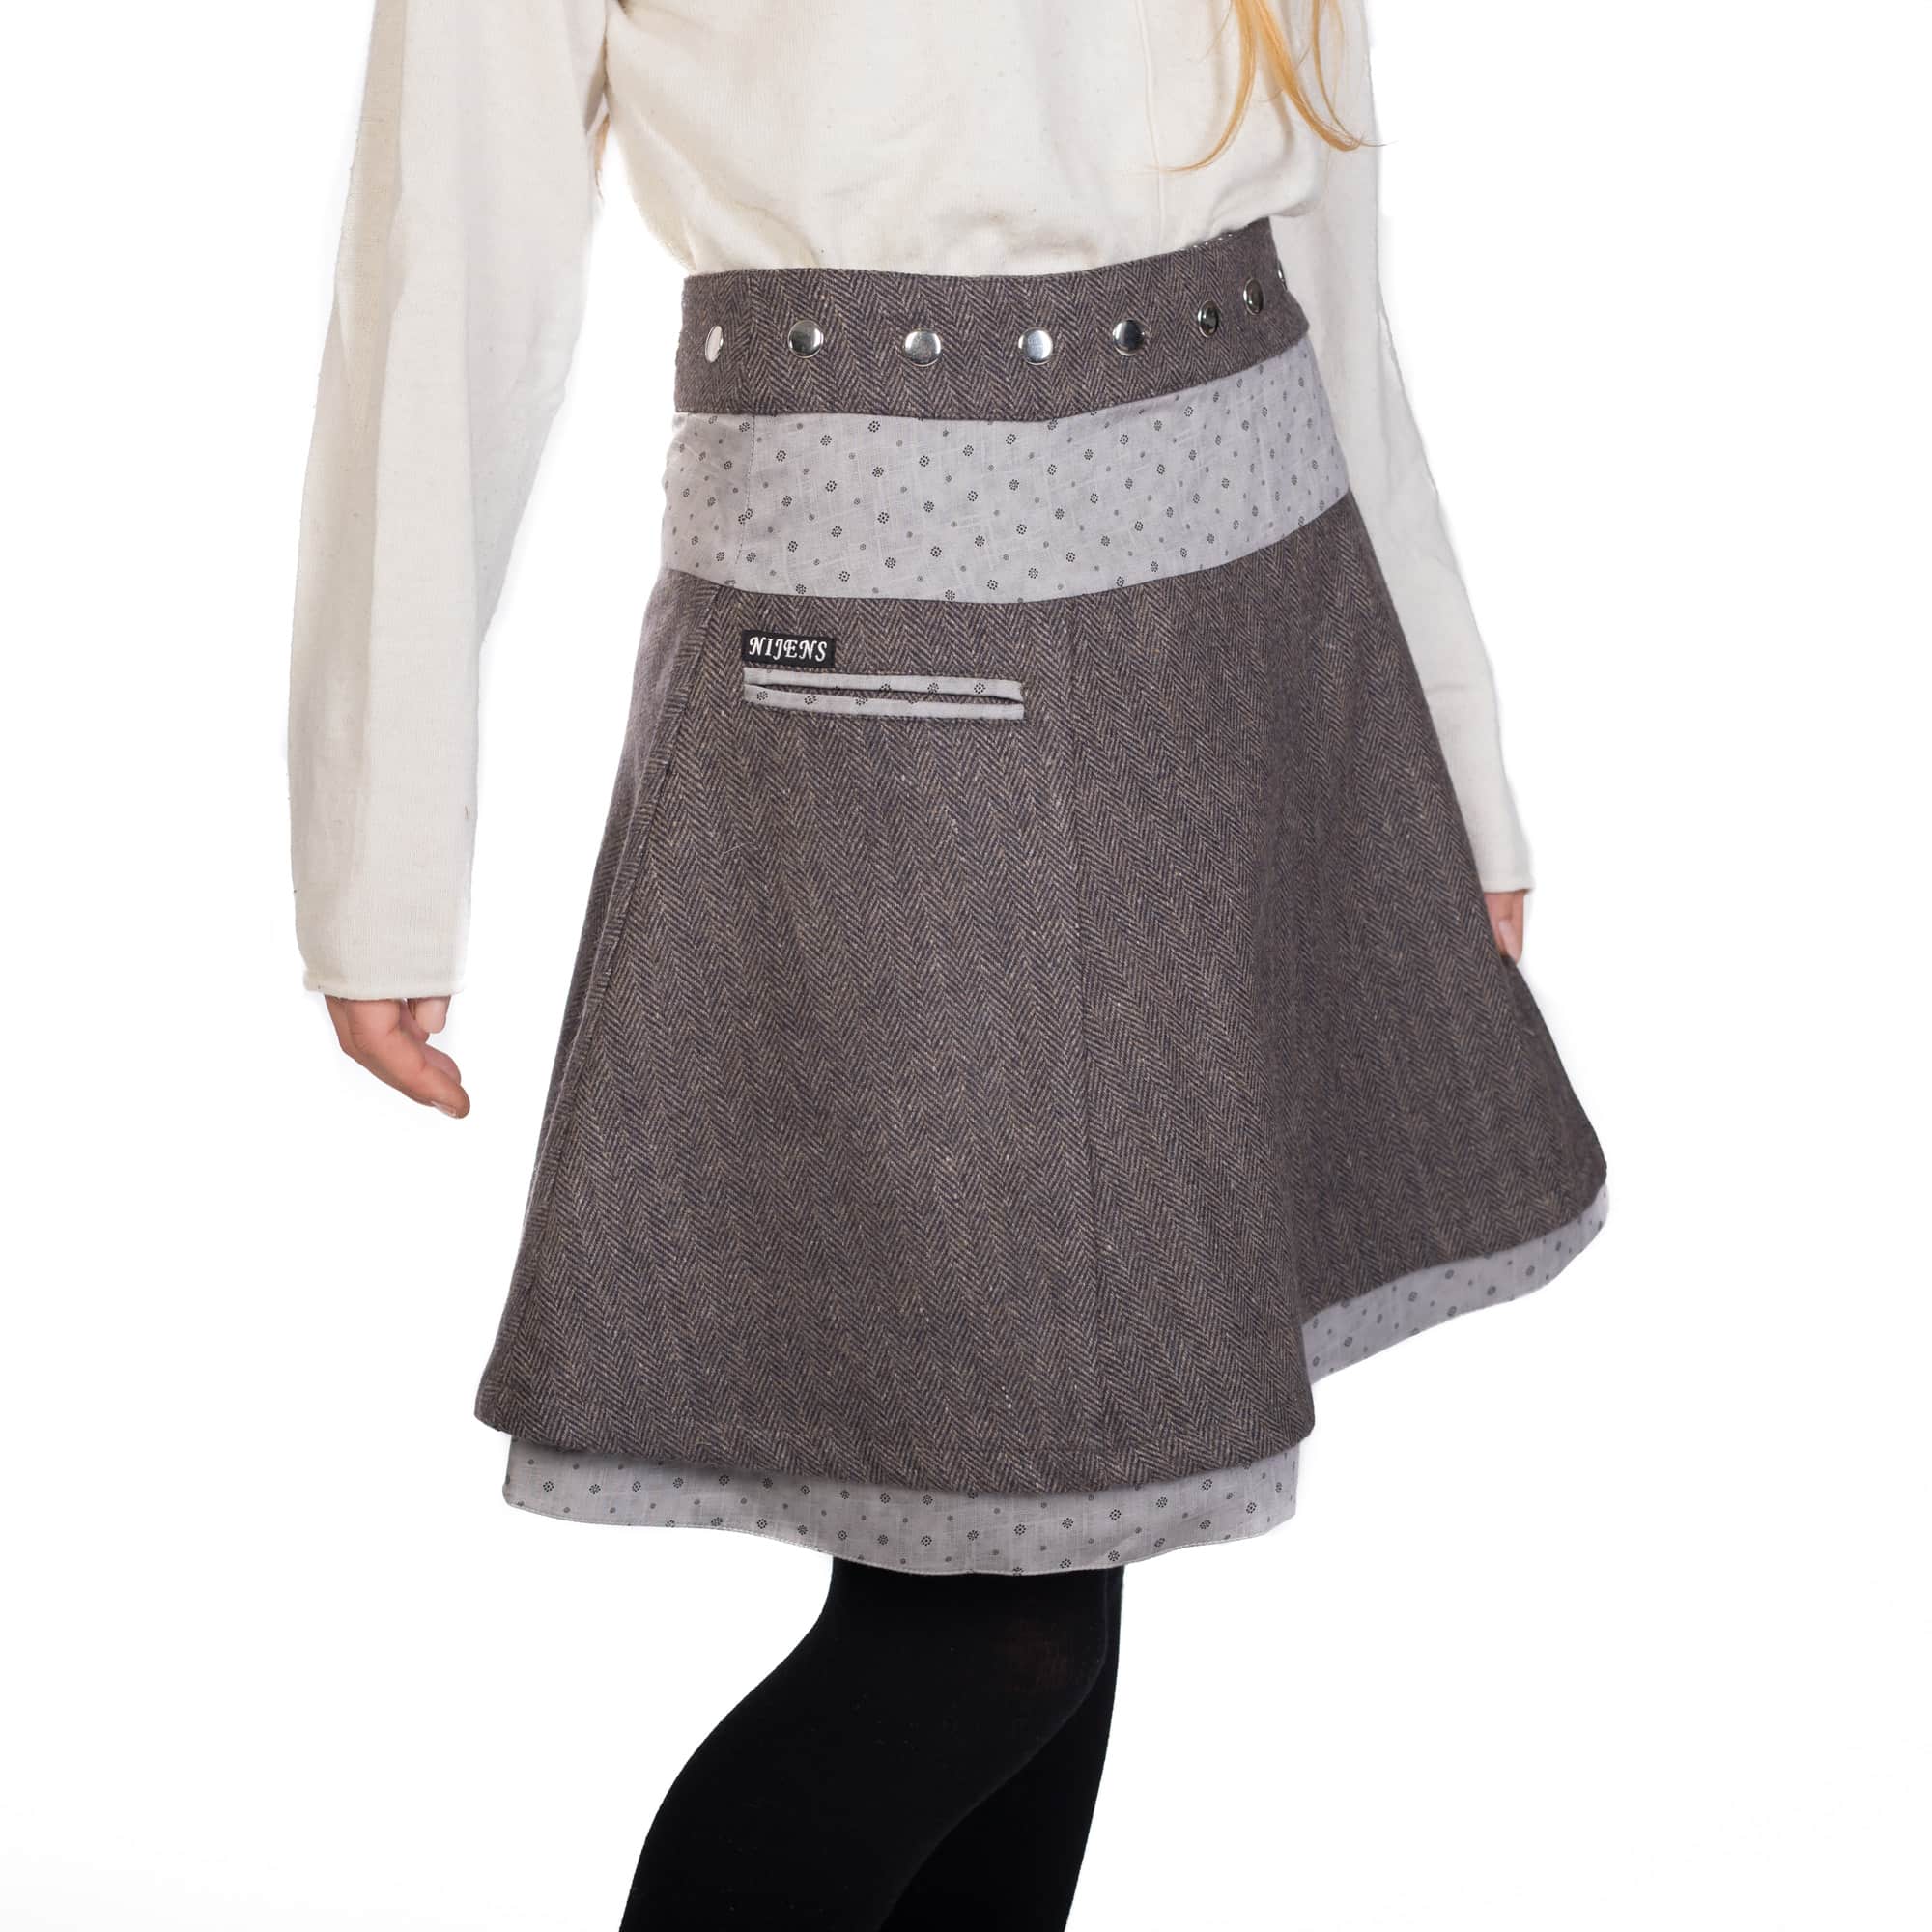 Nijens Winter Rock Wenderock Wickelrock Wolle Baumwolle Indien Stoff wrap skirt 